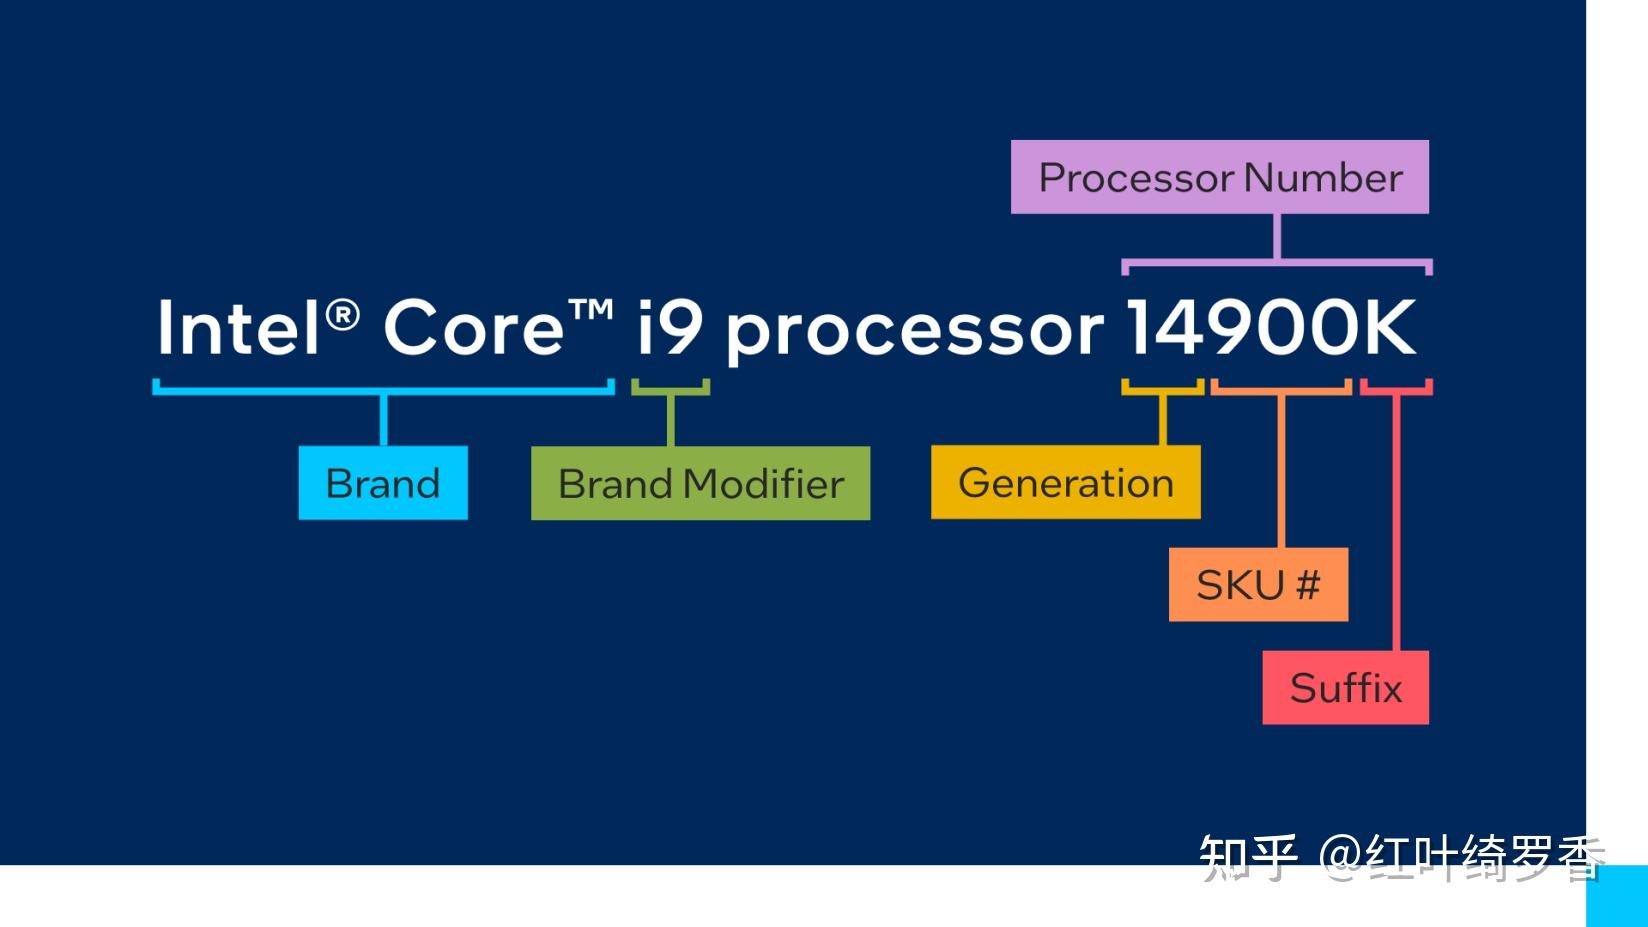 深度剖析英特尔酷睿i5-10600T处理器：性能卓越，功耗适中，适用广泛的桌面级处理器  第6张